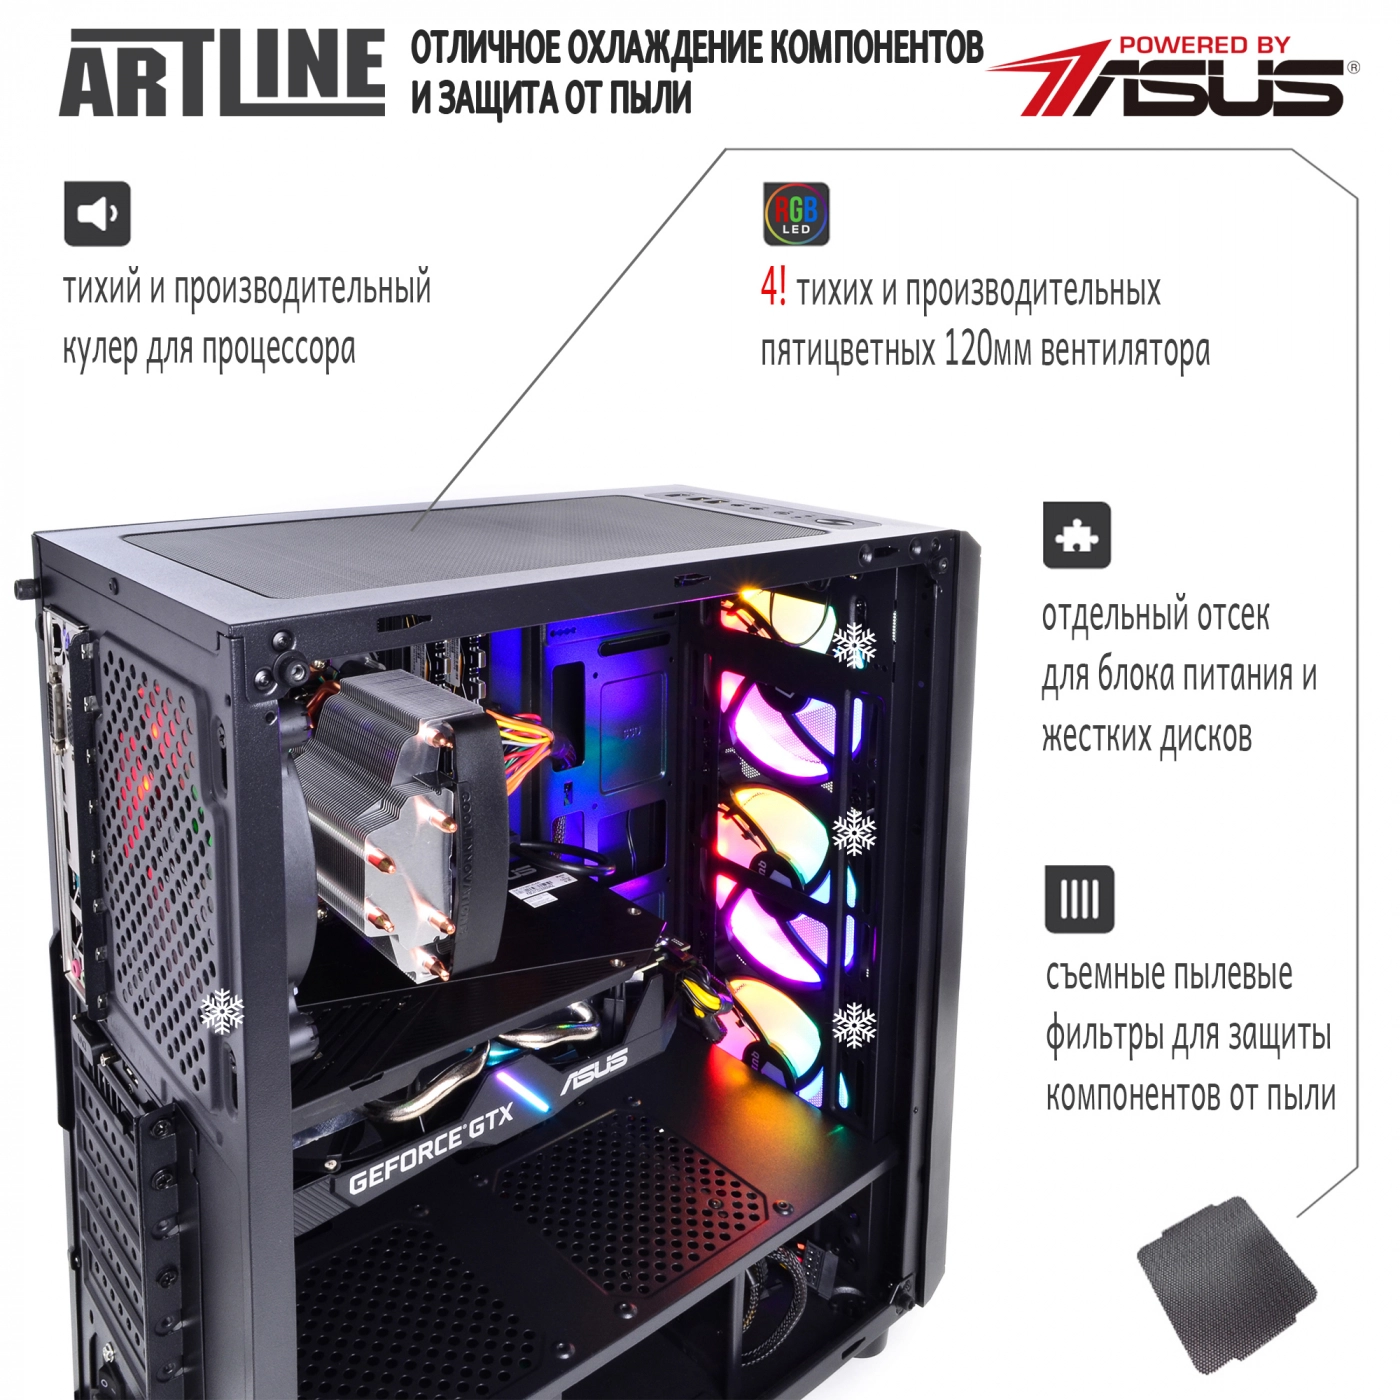 Купить Компьютер ARTLINE Gaming X53v18 - фото 3